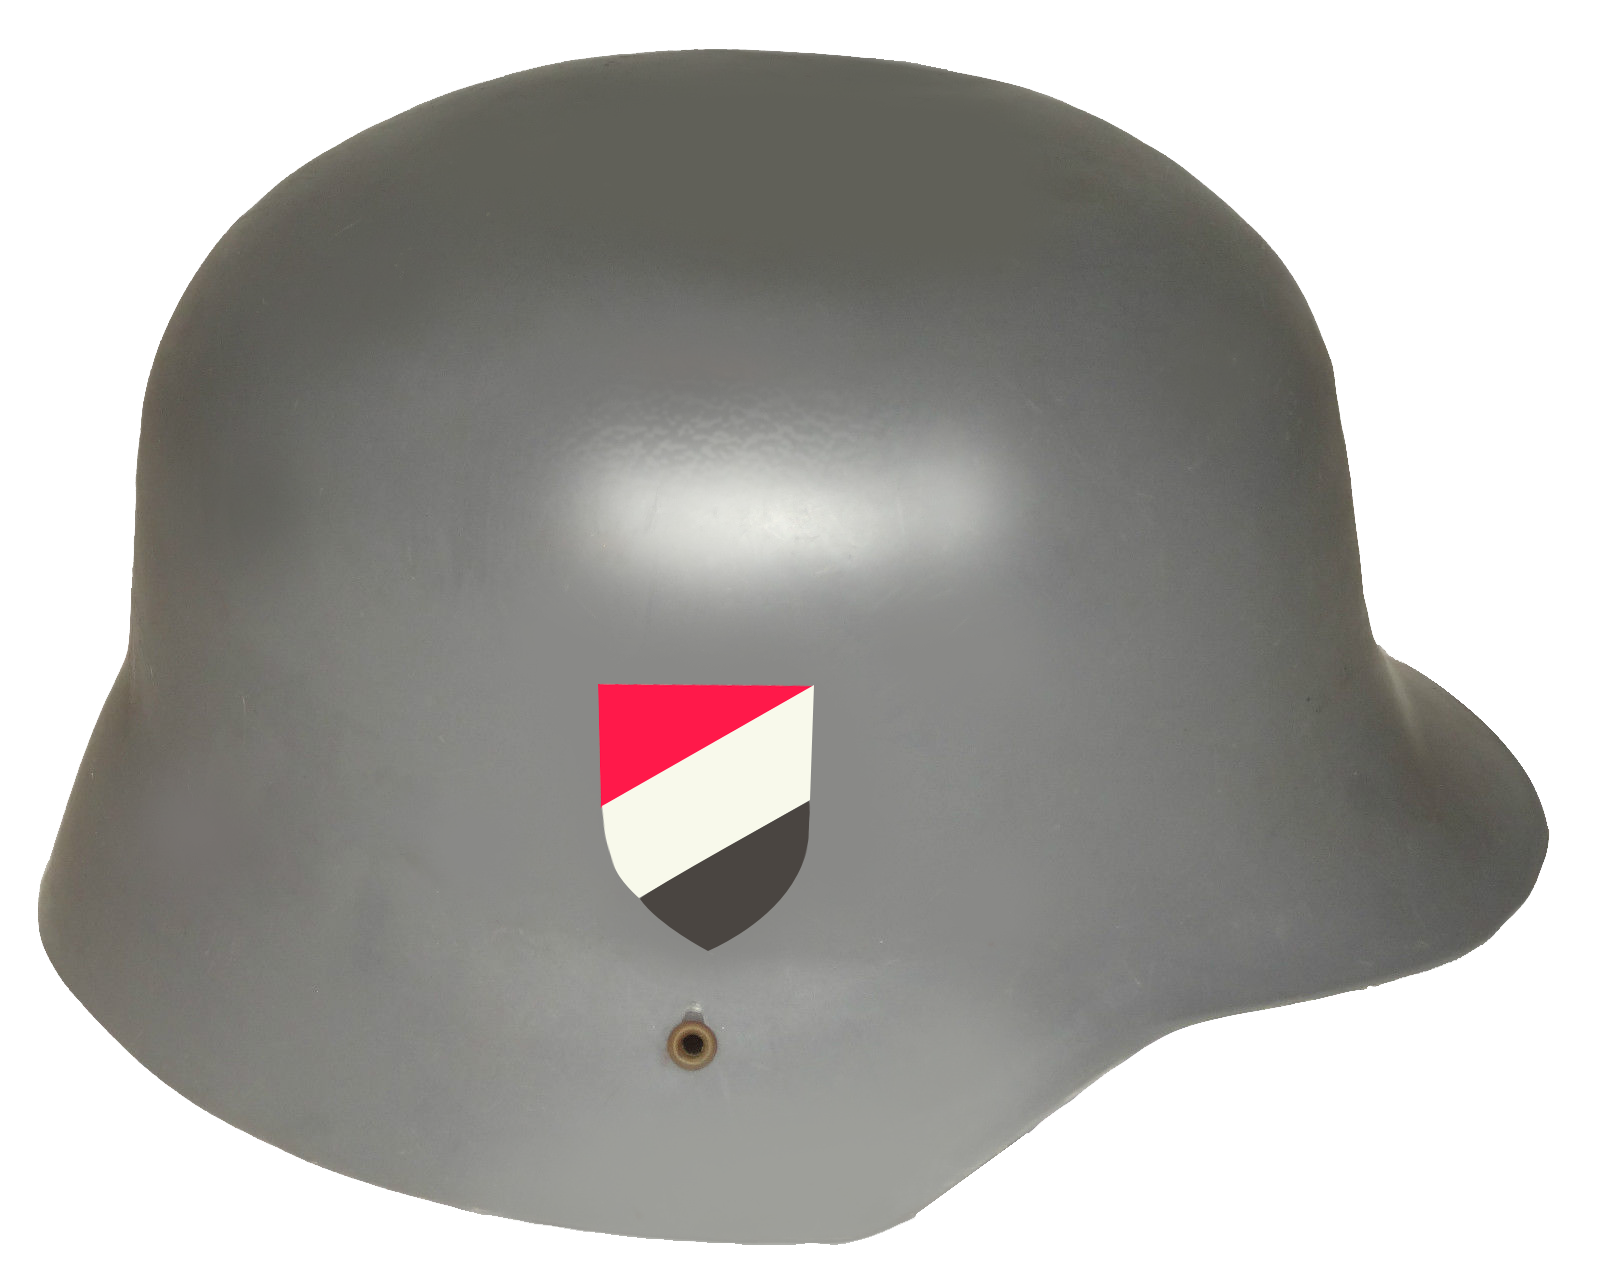 Army Helmet Clipart